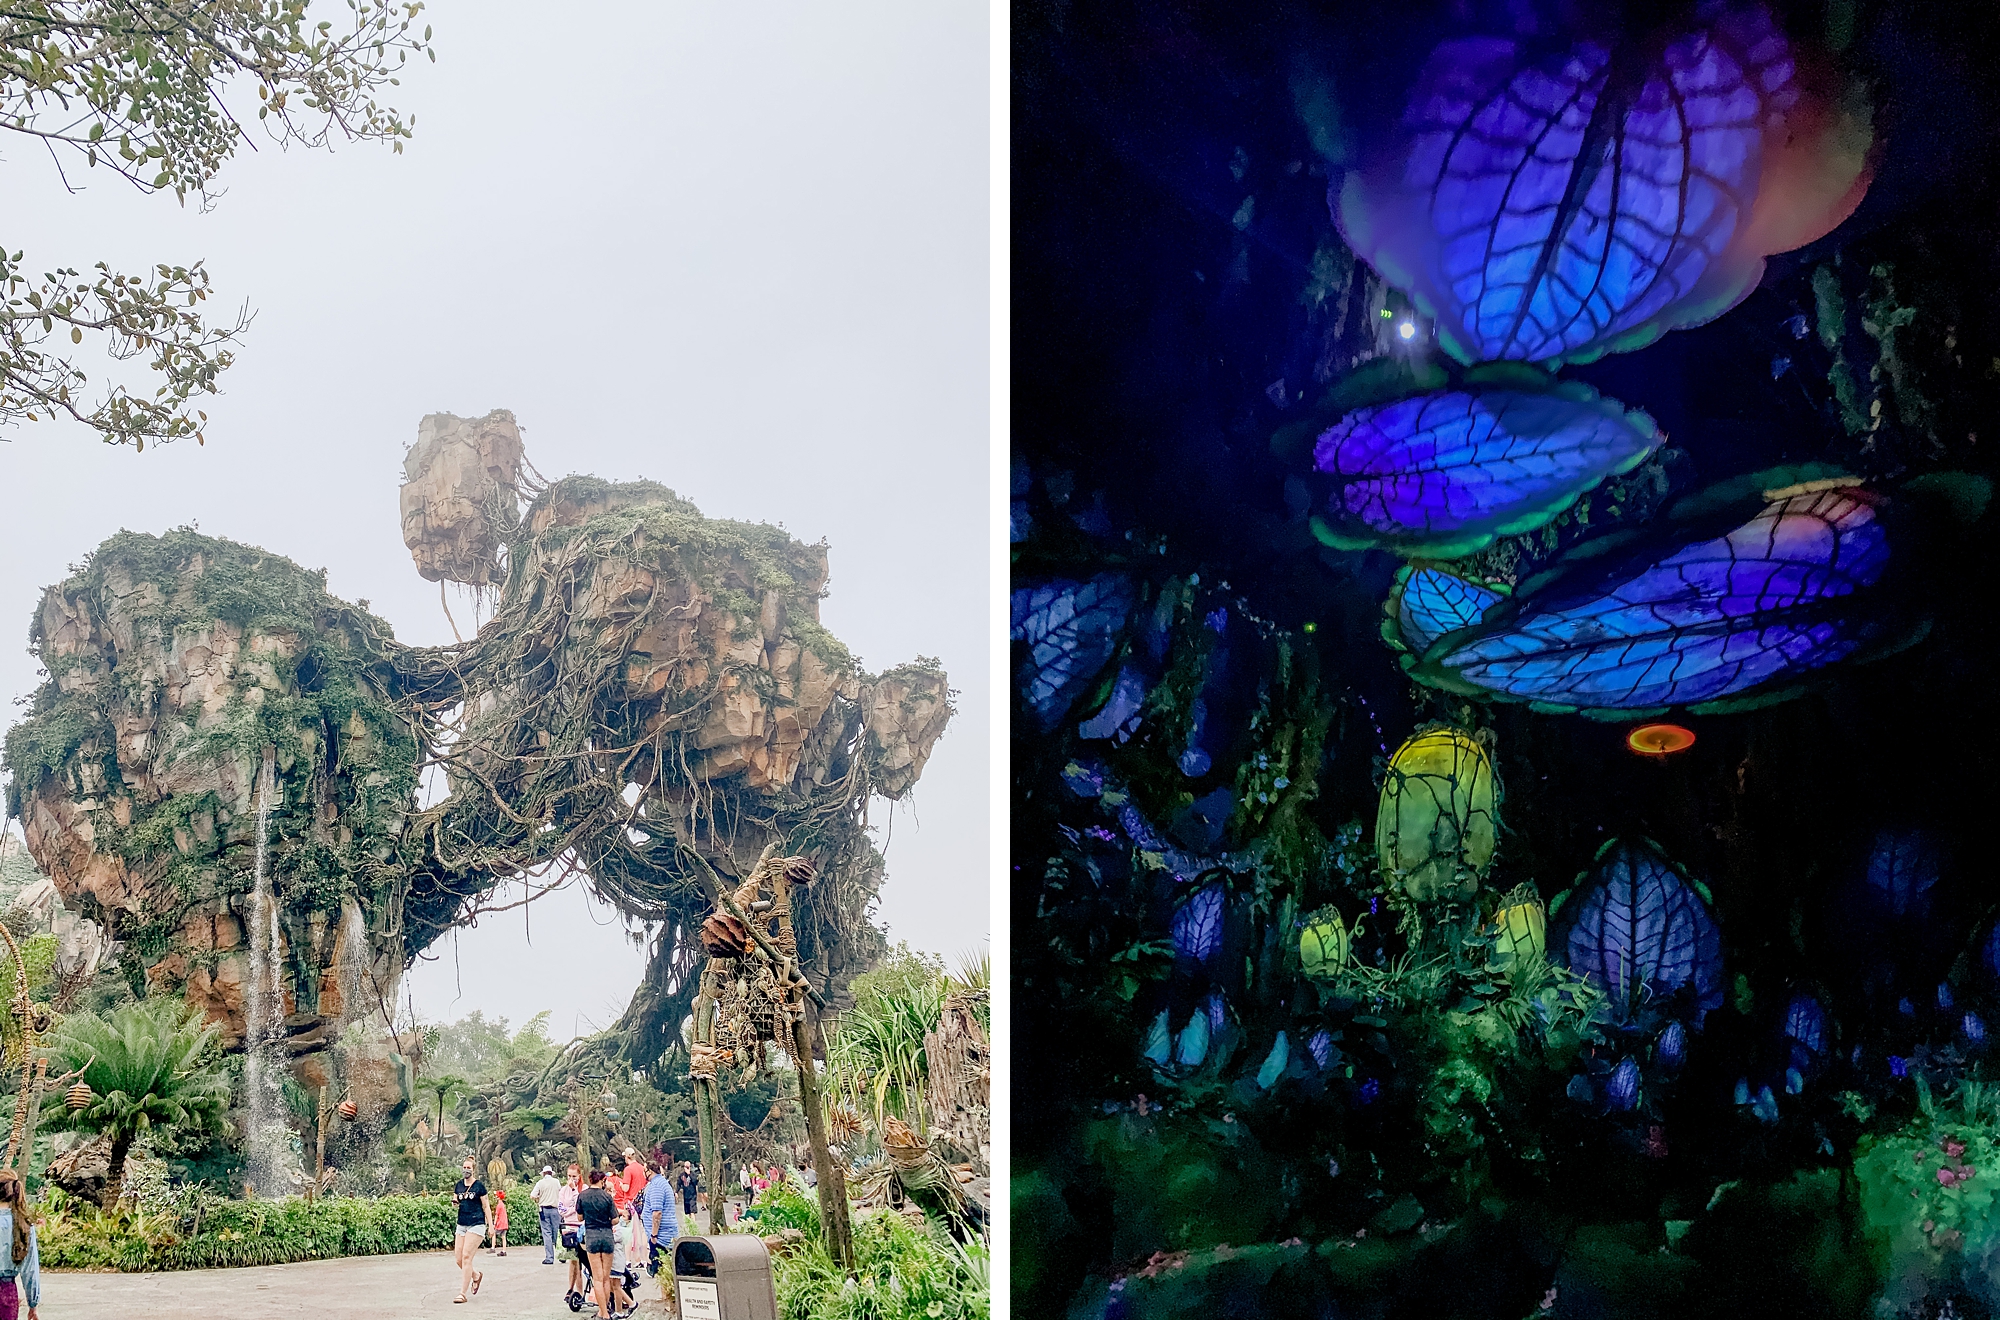 Pandora land at Animal Kingdom in Walt Disney World